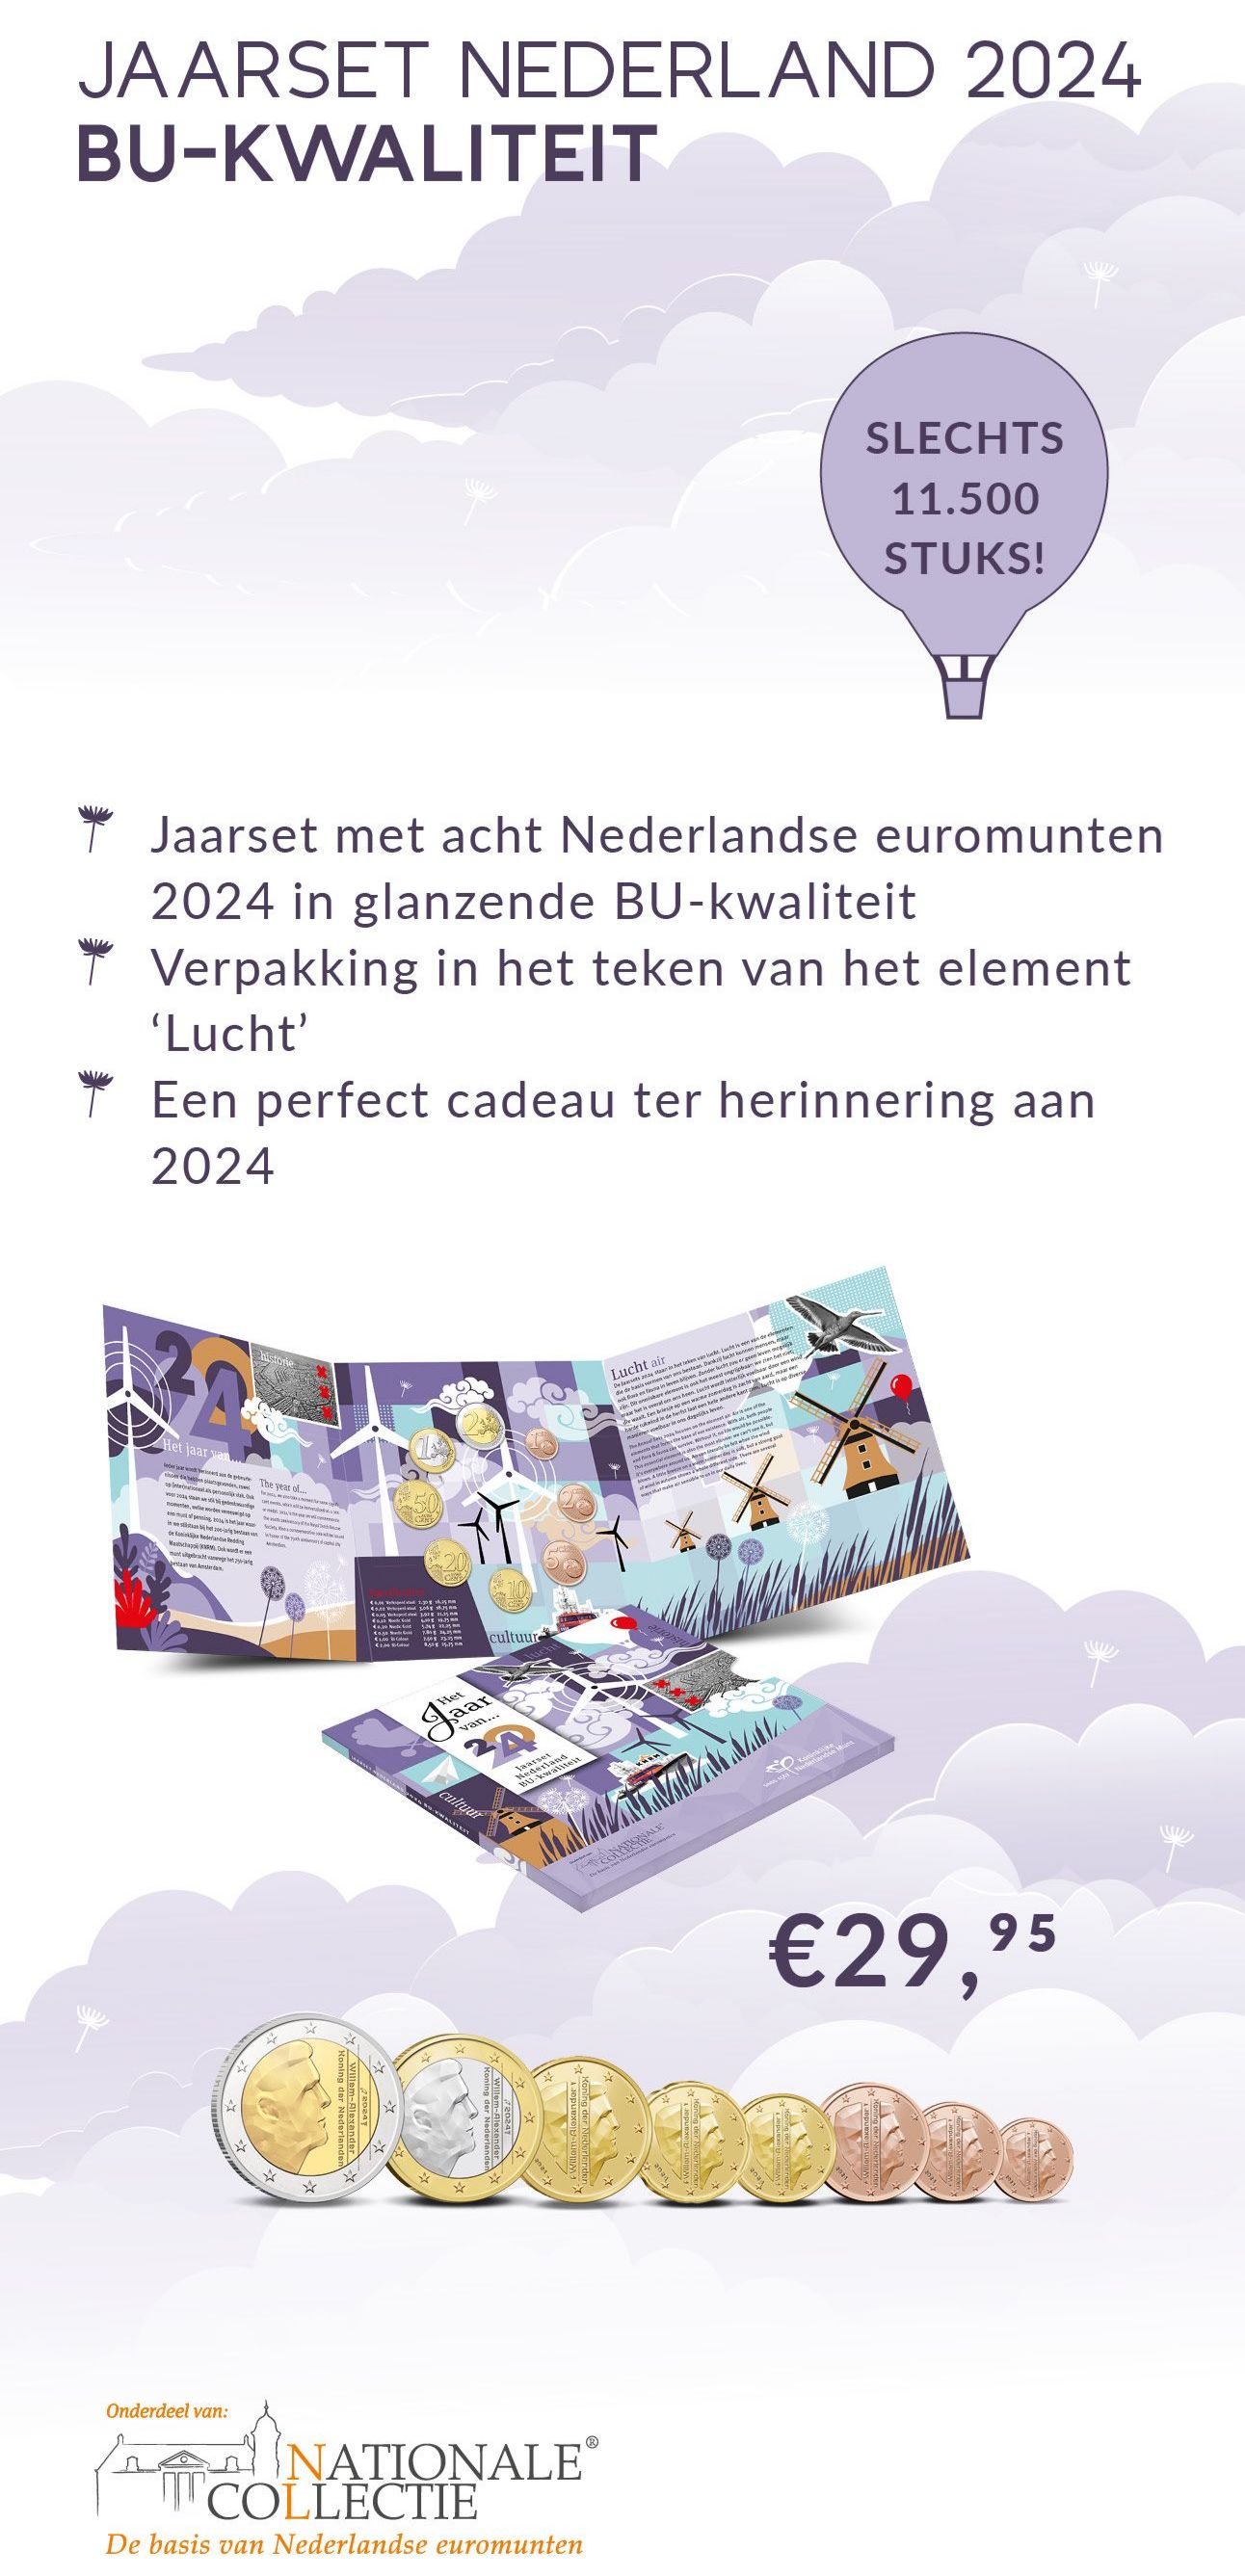 Jaarset Nederland 2024 BU-kwaliteit